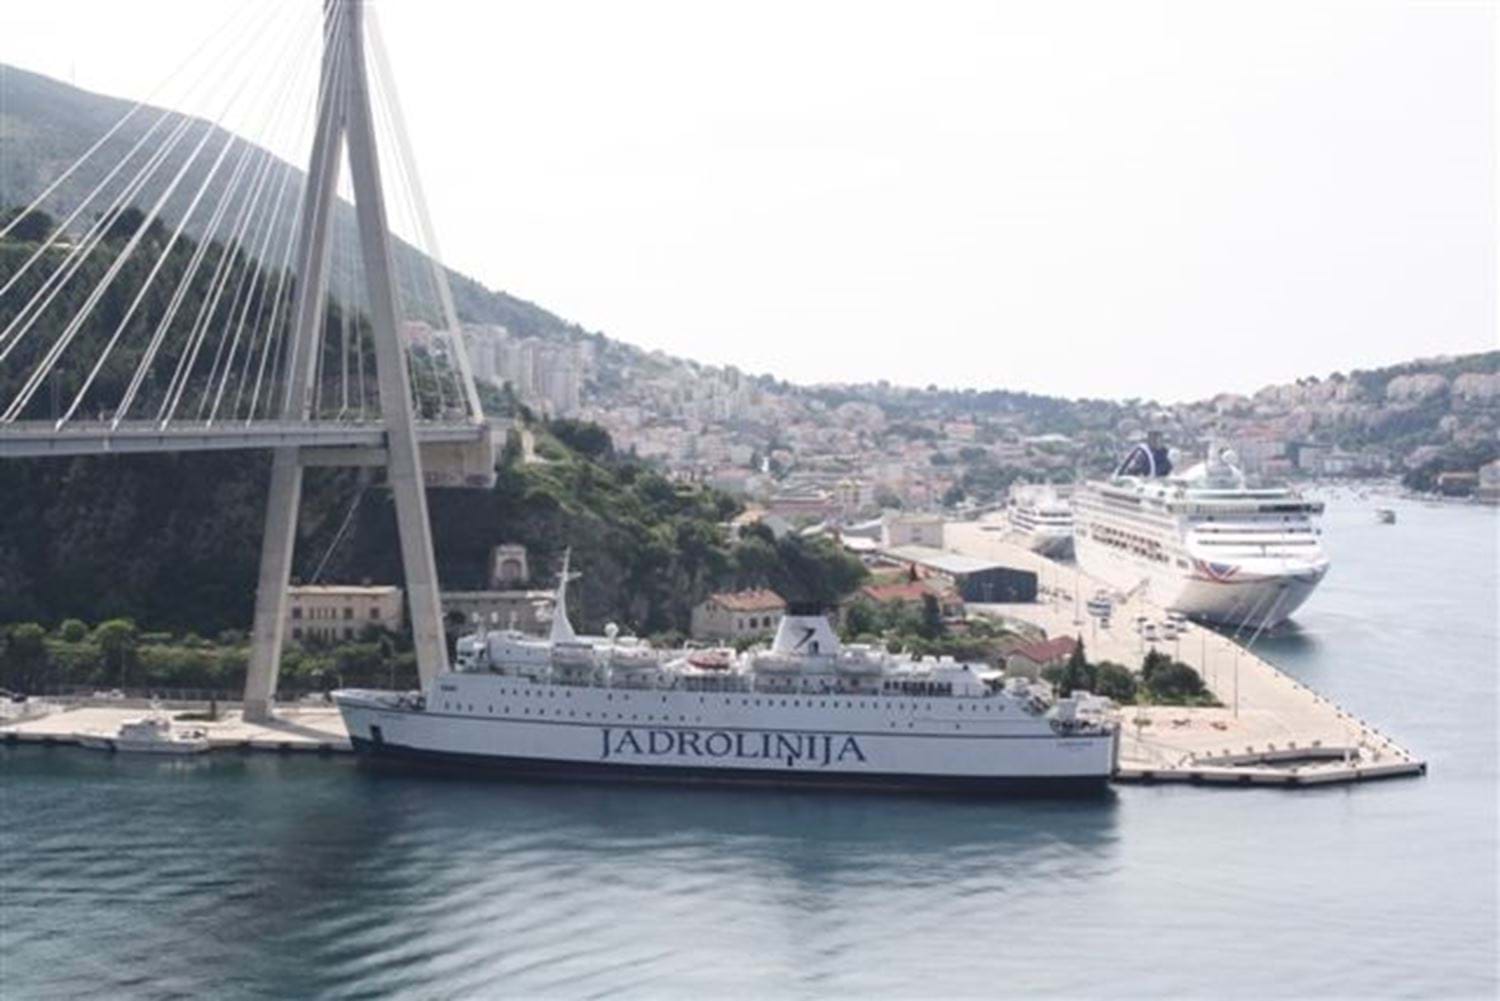 Grote cruiseschepen in de haven van Dubrovnik